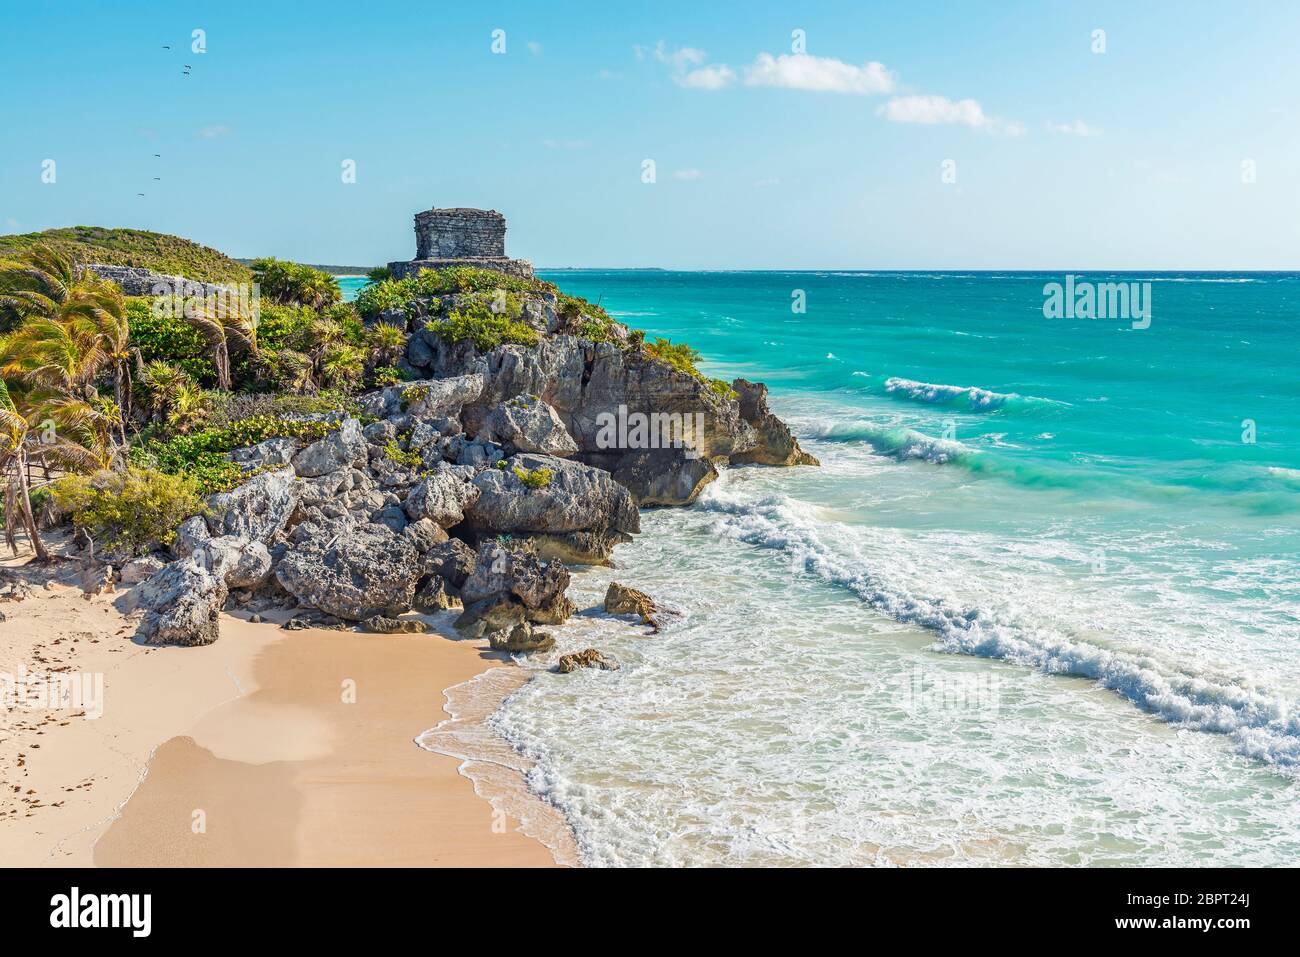 Les ruines mayas de Tulum et sa plage au bord de la mer des Caraïbes, État de Quintana Roo, péninsule du Yucatan, Mexique. Banque D'Images